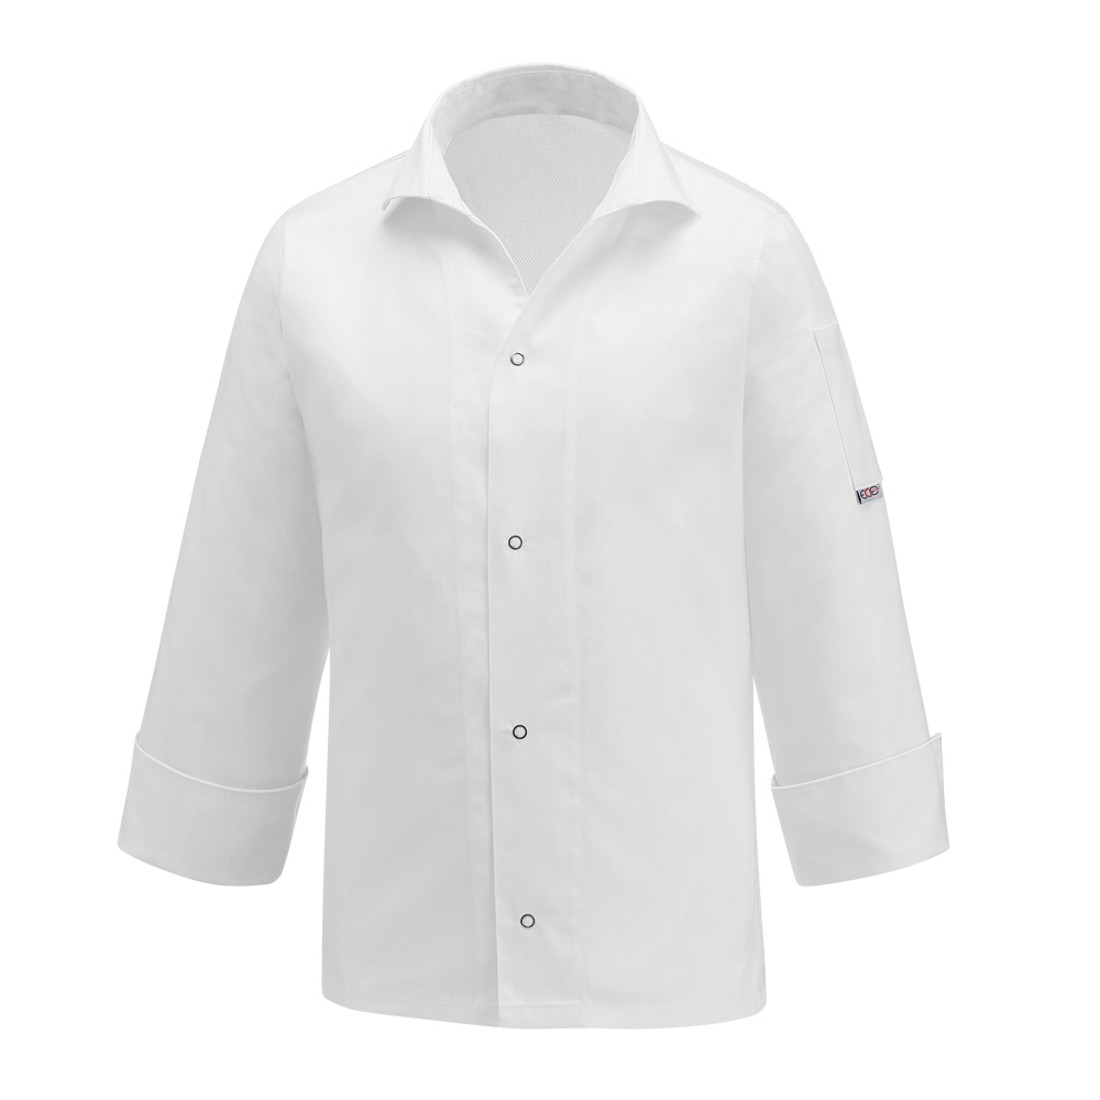 Veste chef Vip, 100% coton - Les vêtements de protection